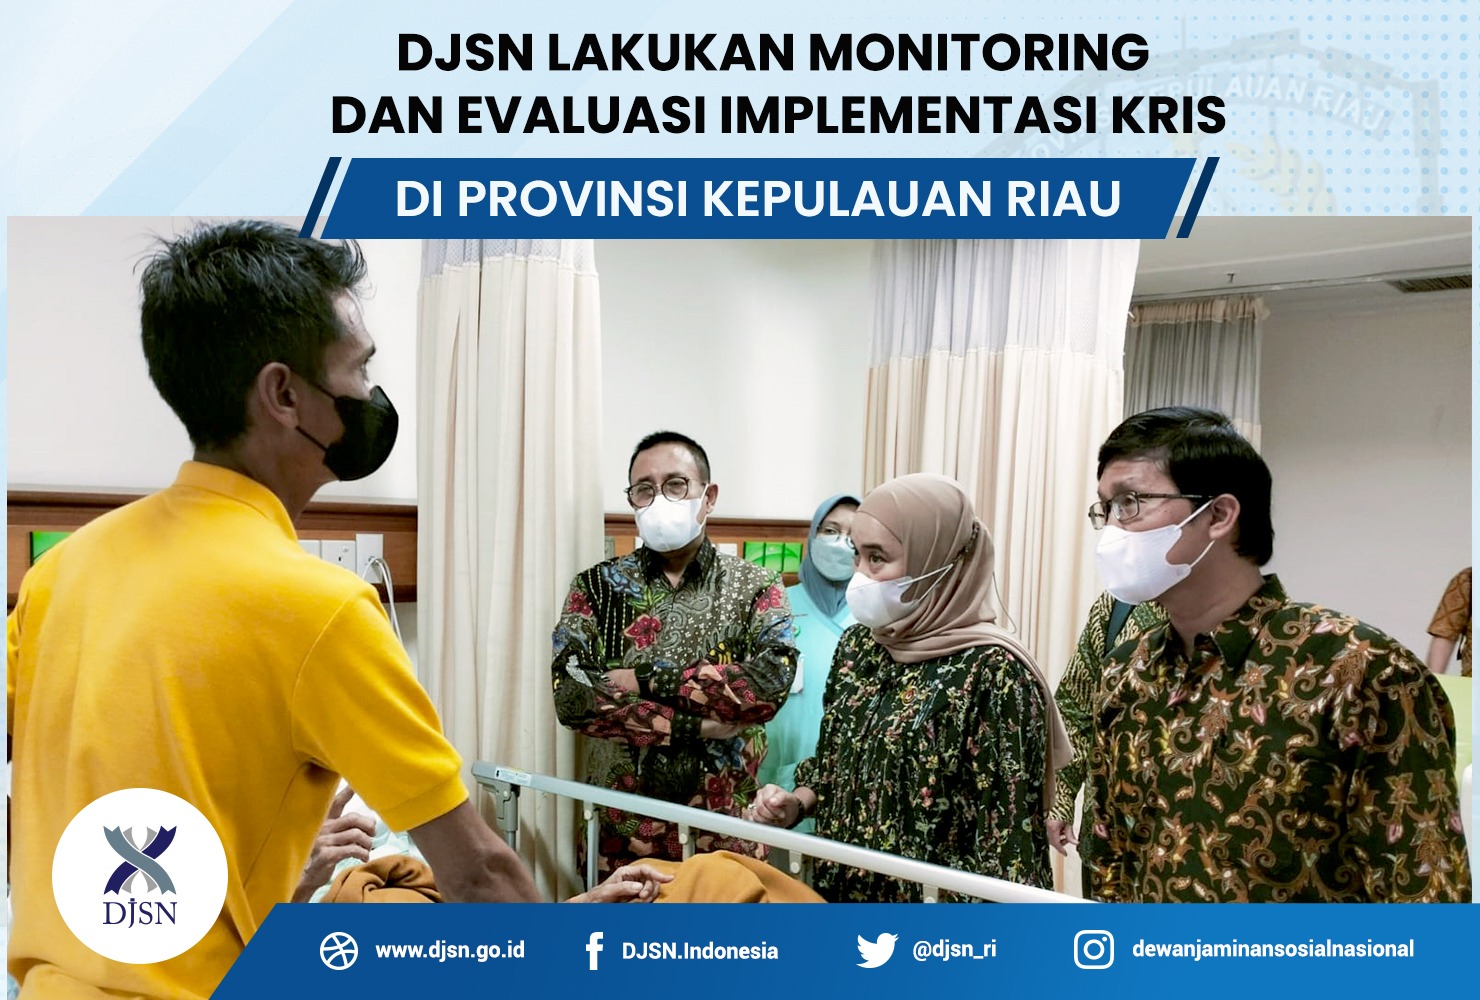 DJSN Lakukan Monitoring dan Evaluasi Implementasi KRIS di Provinsi Kepulauan Riau